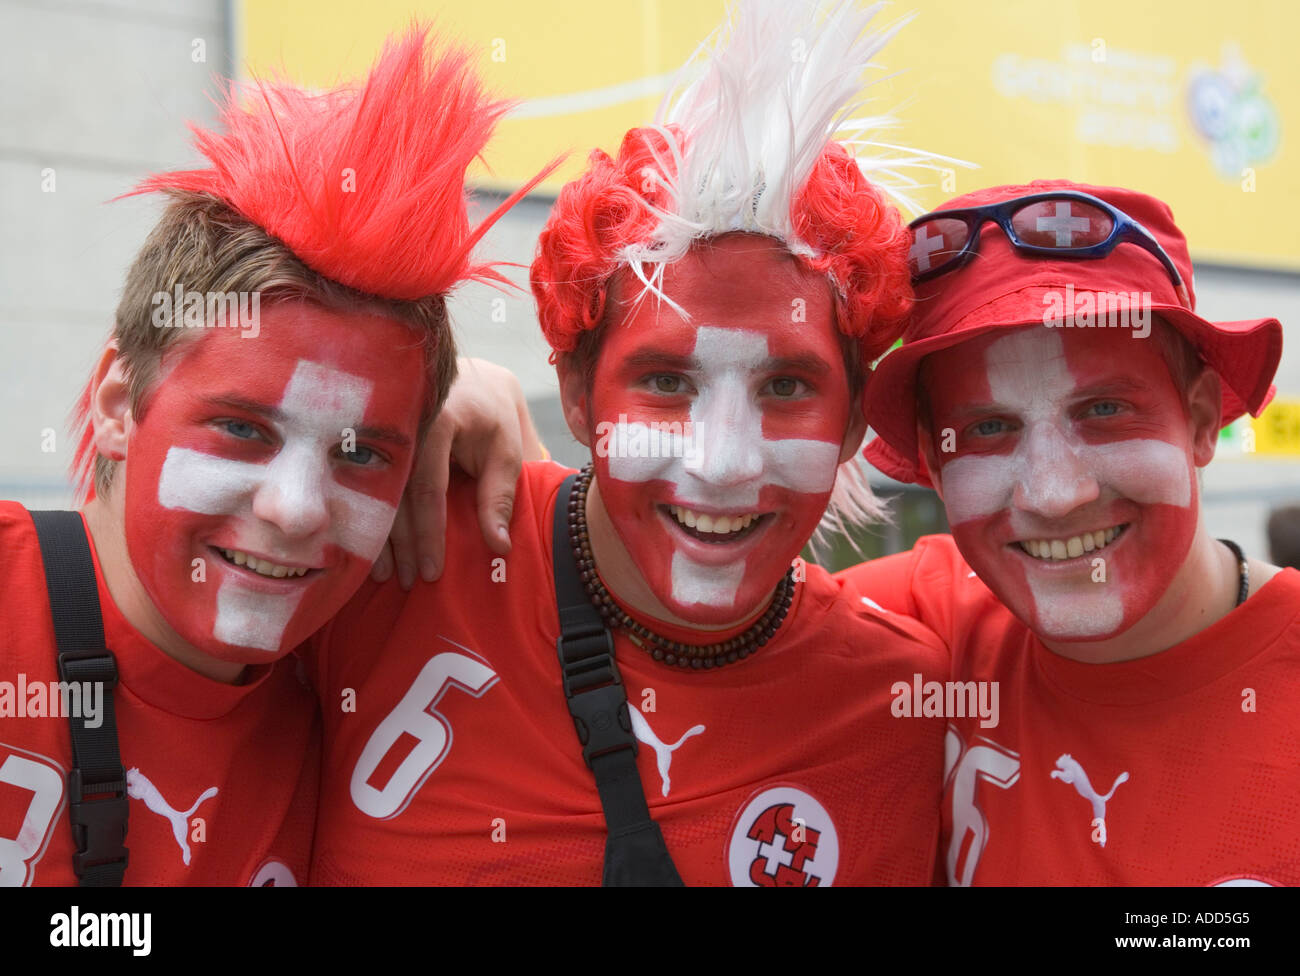 Drei Schweizer Fußball-Fans mit Make-up in ihren Landesfarben, lächelnd in gute Laune Stockfoto